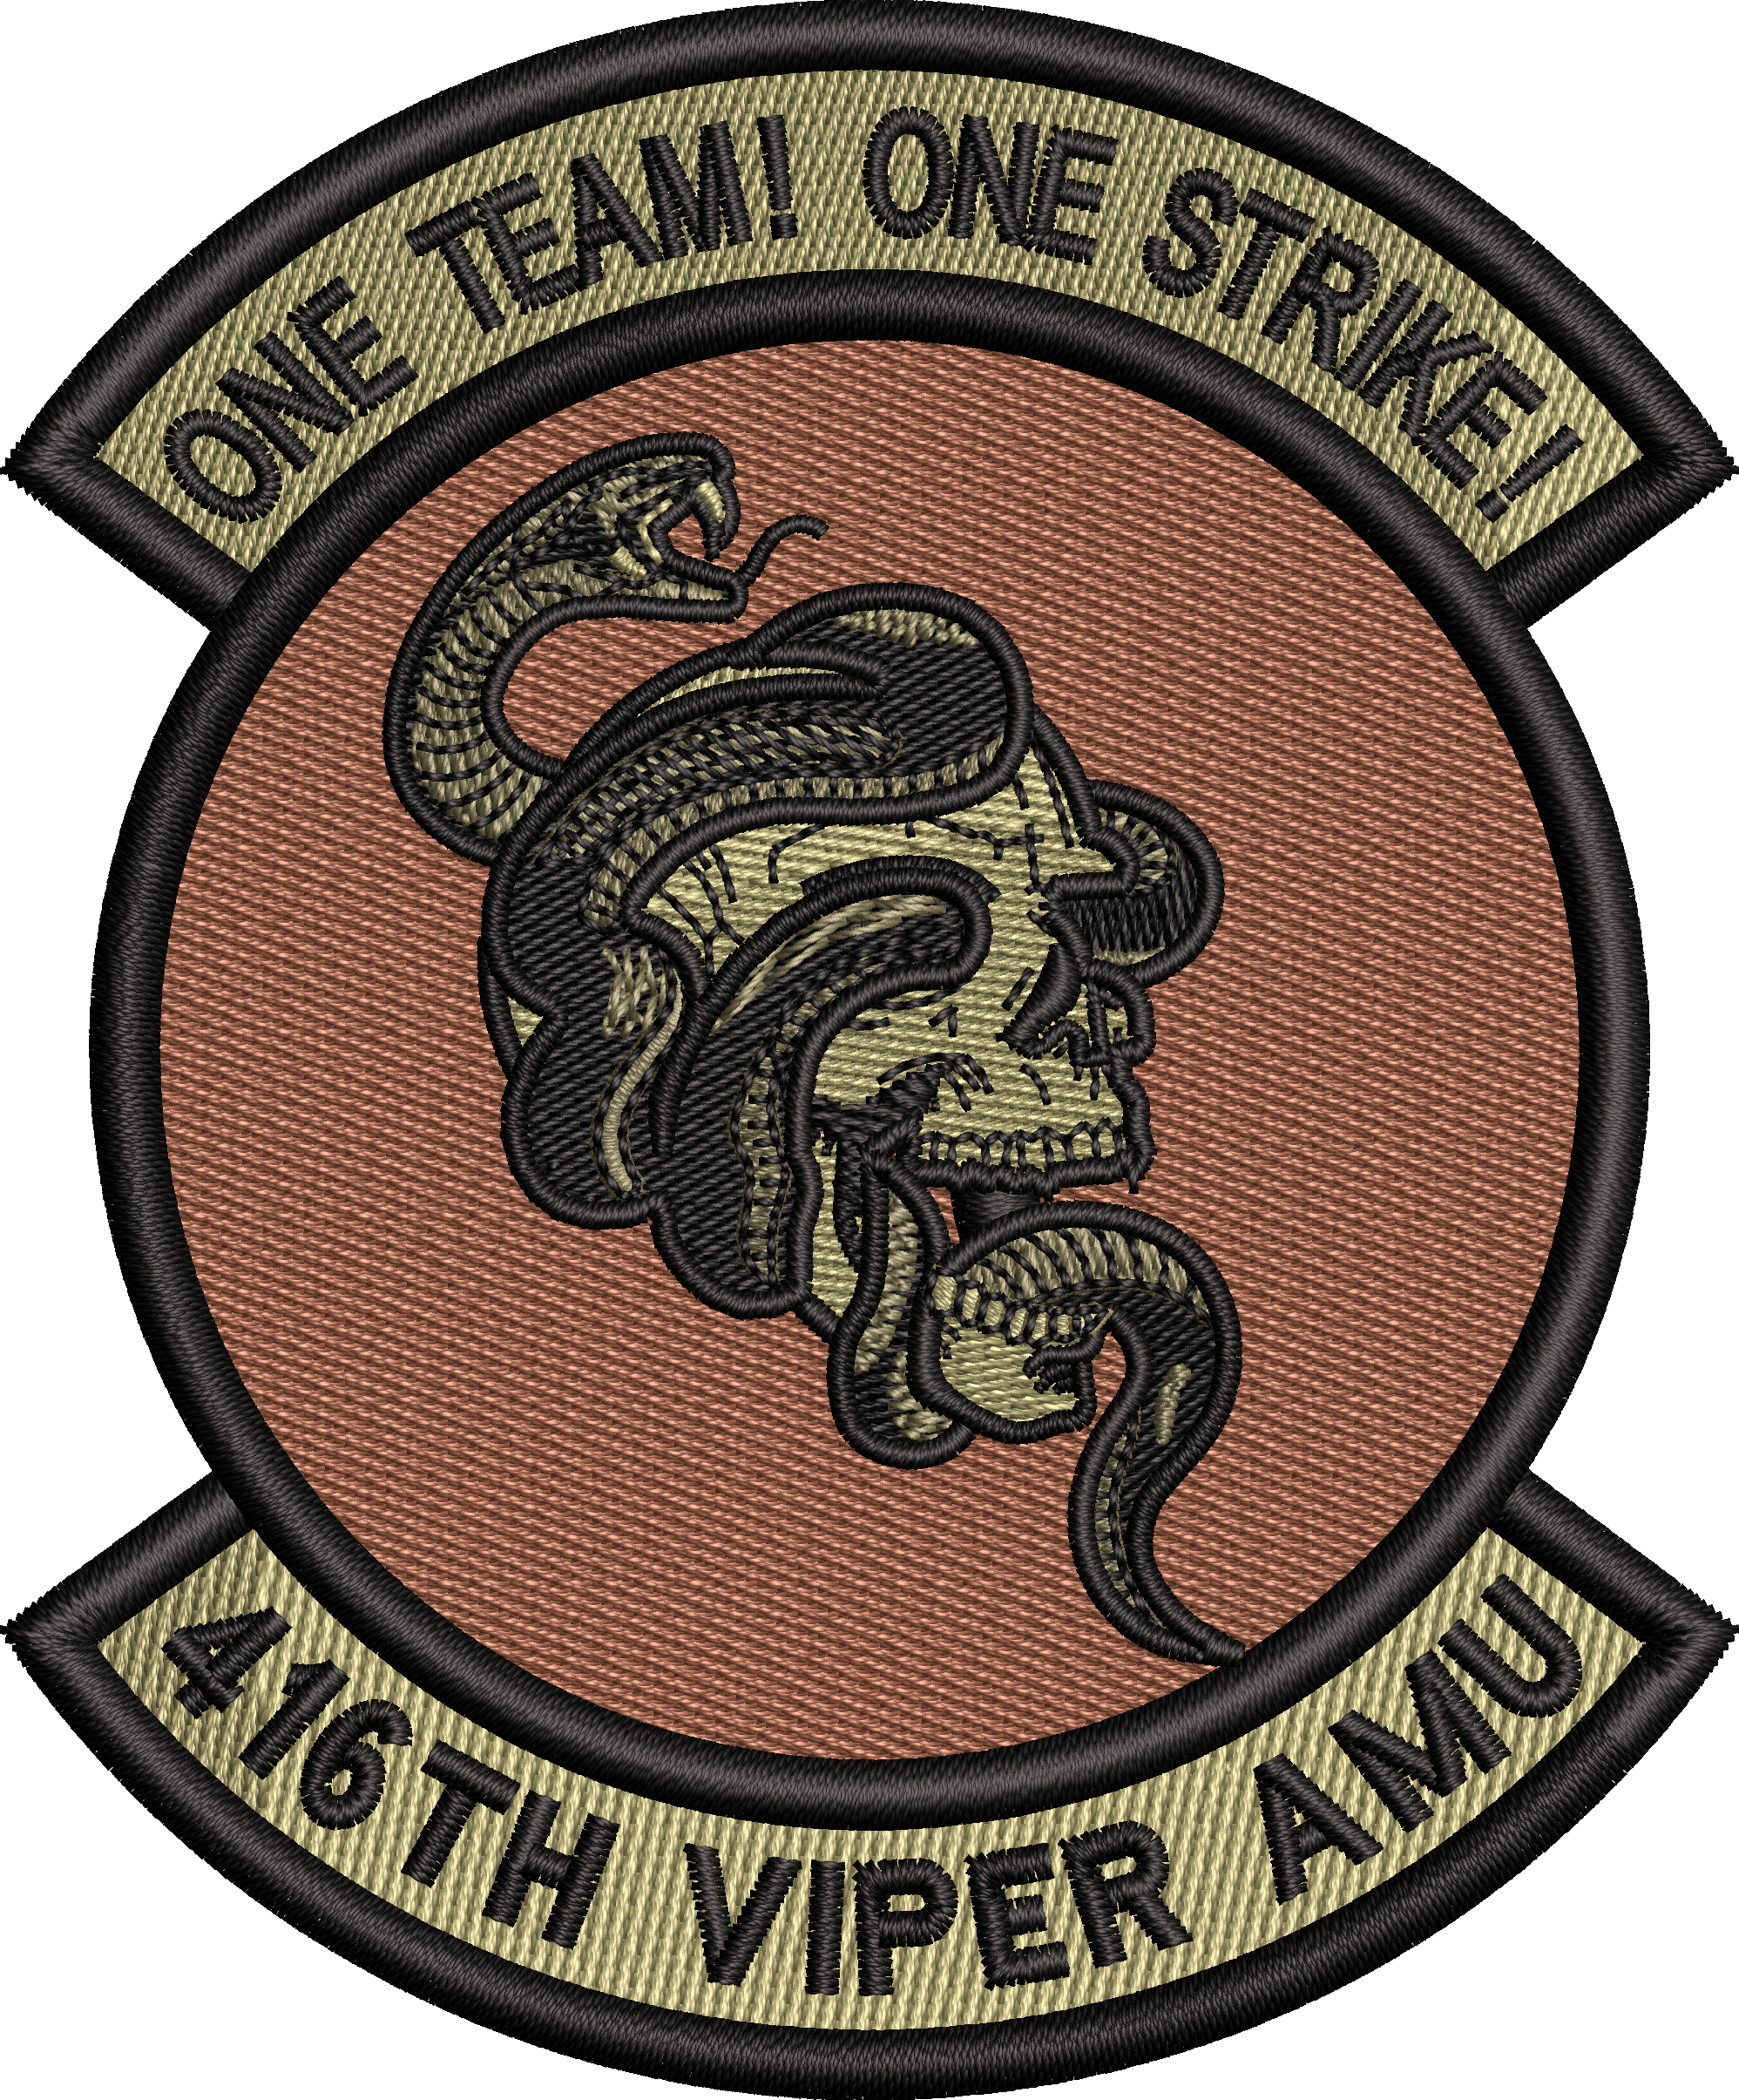 416th AMU VIPER Morale Patch ONE TEAM! ONE STRIKE!